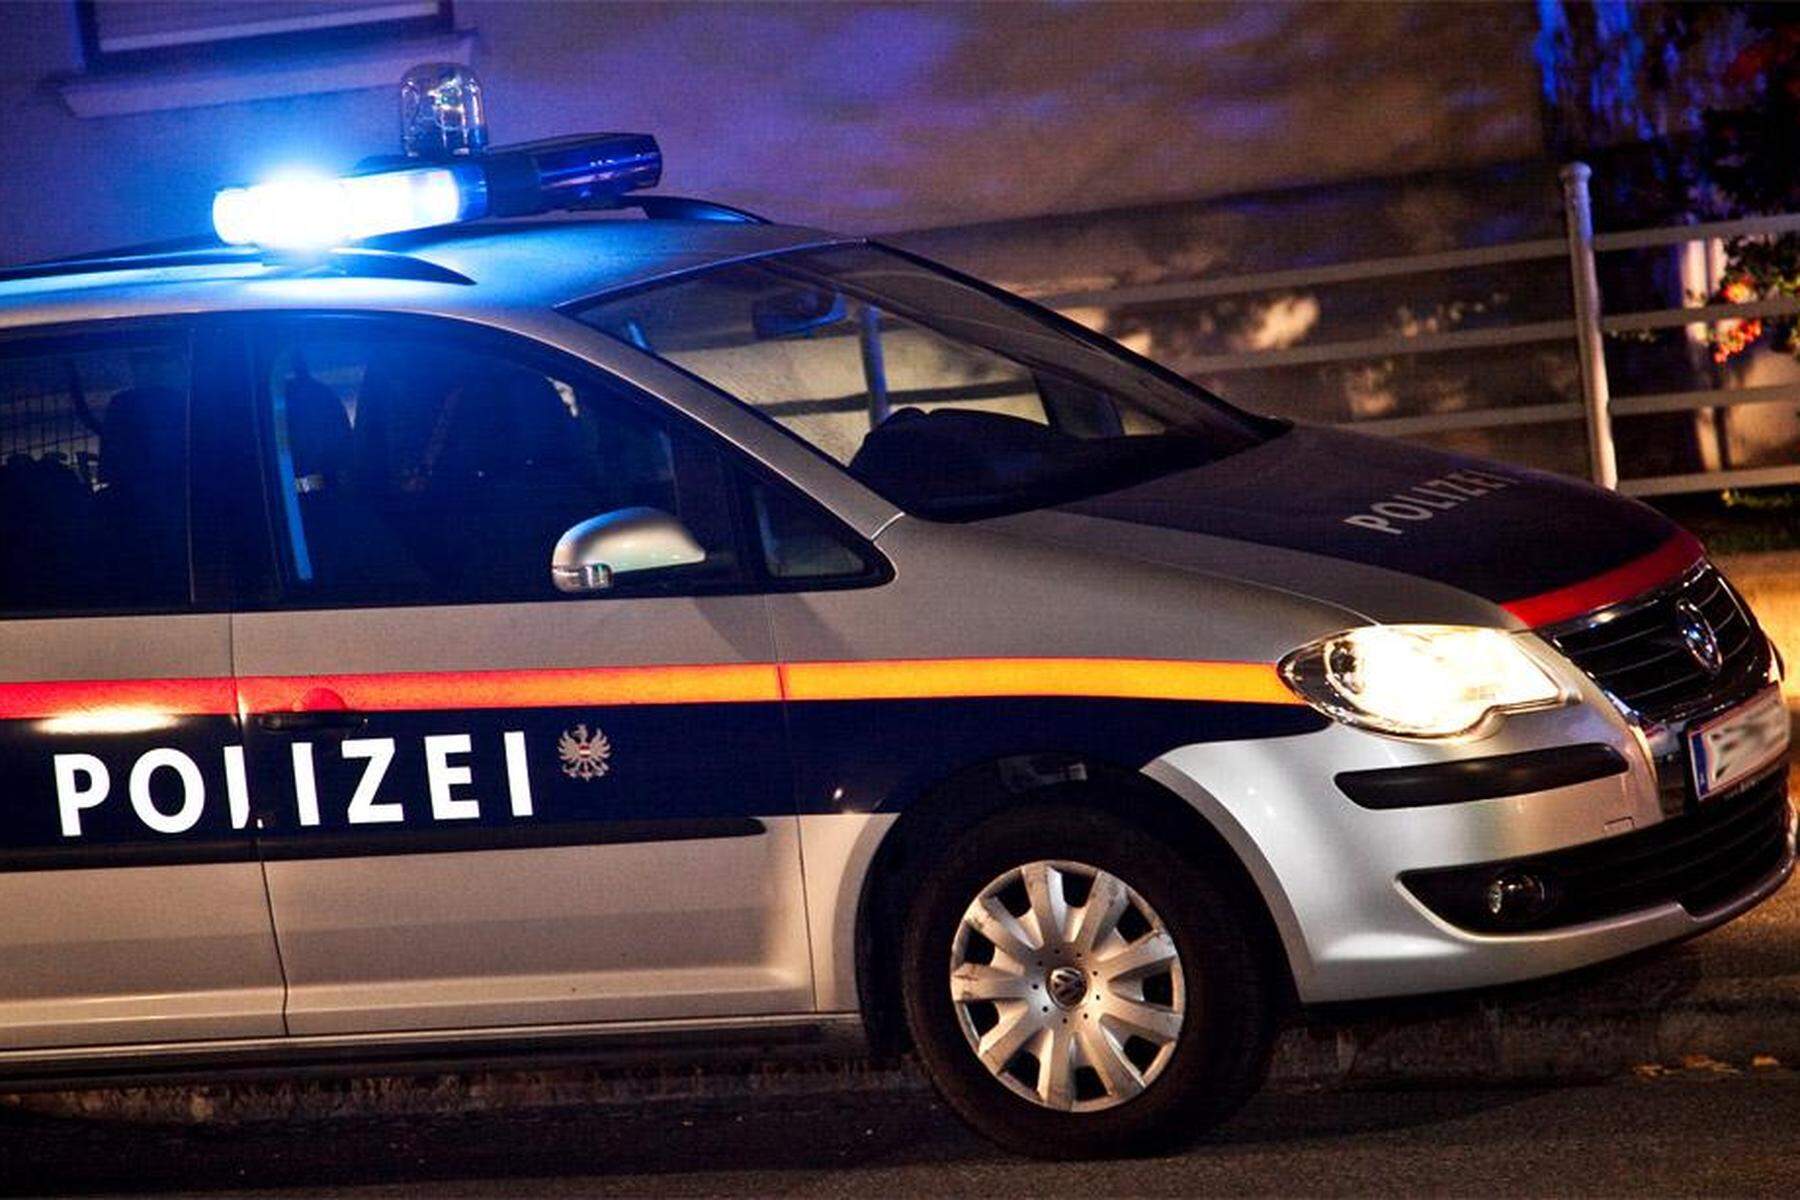 Kärnten | Fast 70 km/h zu schnell: Betrunkener raste durch Stadtgebiet